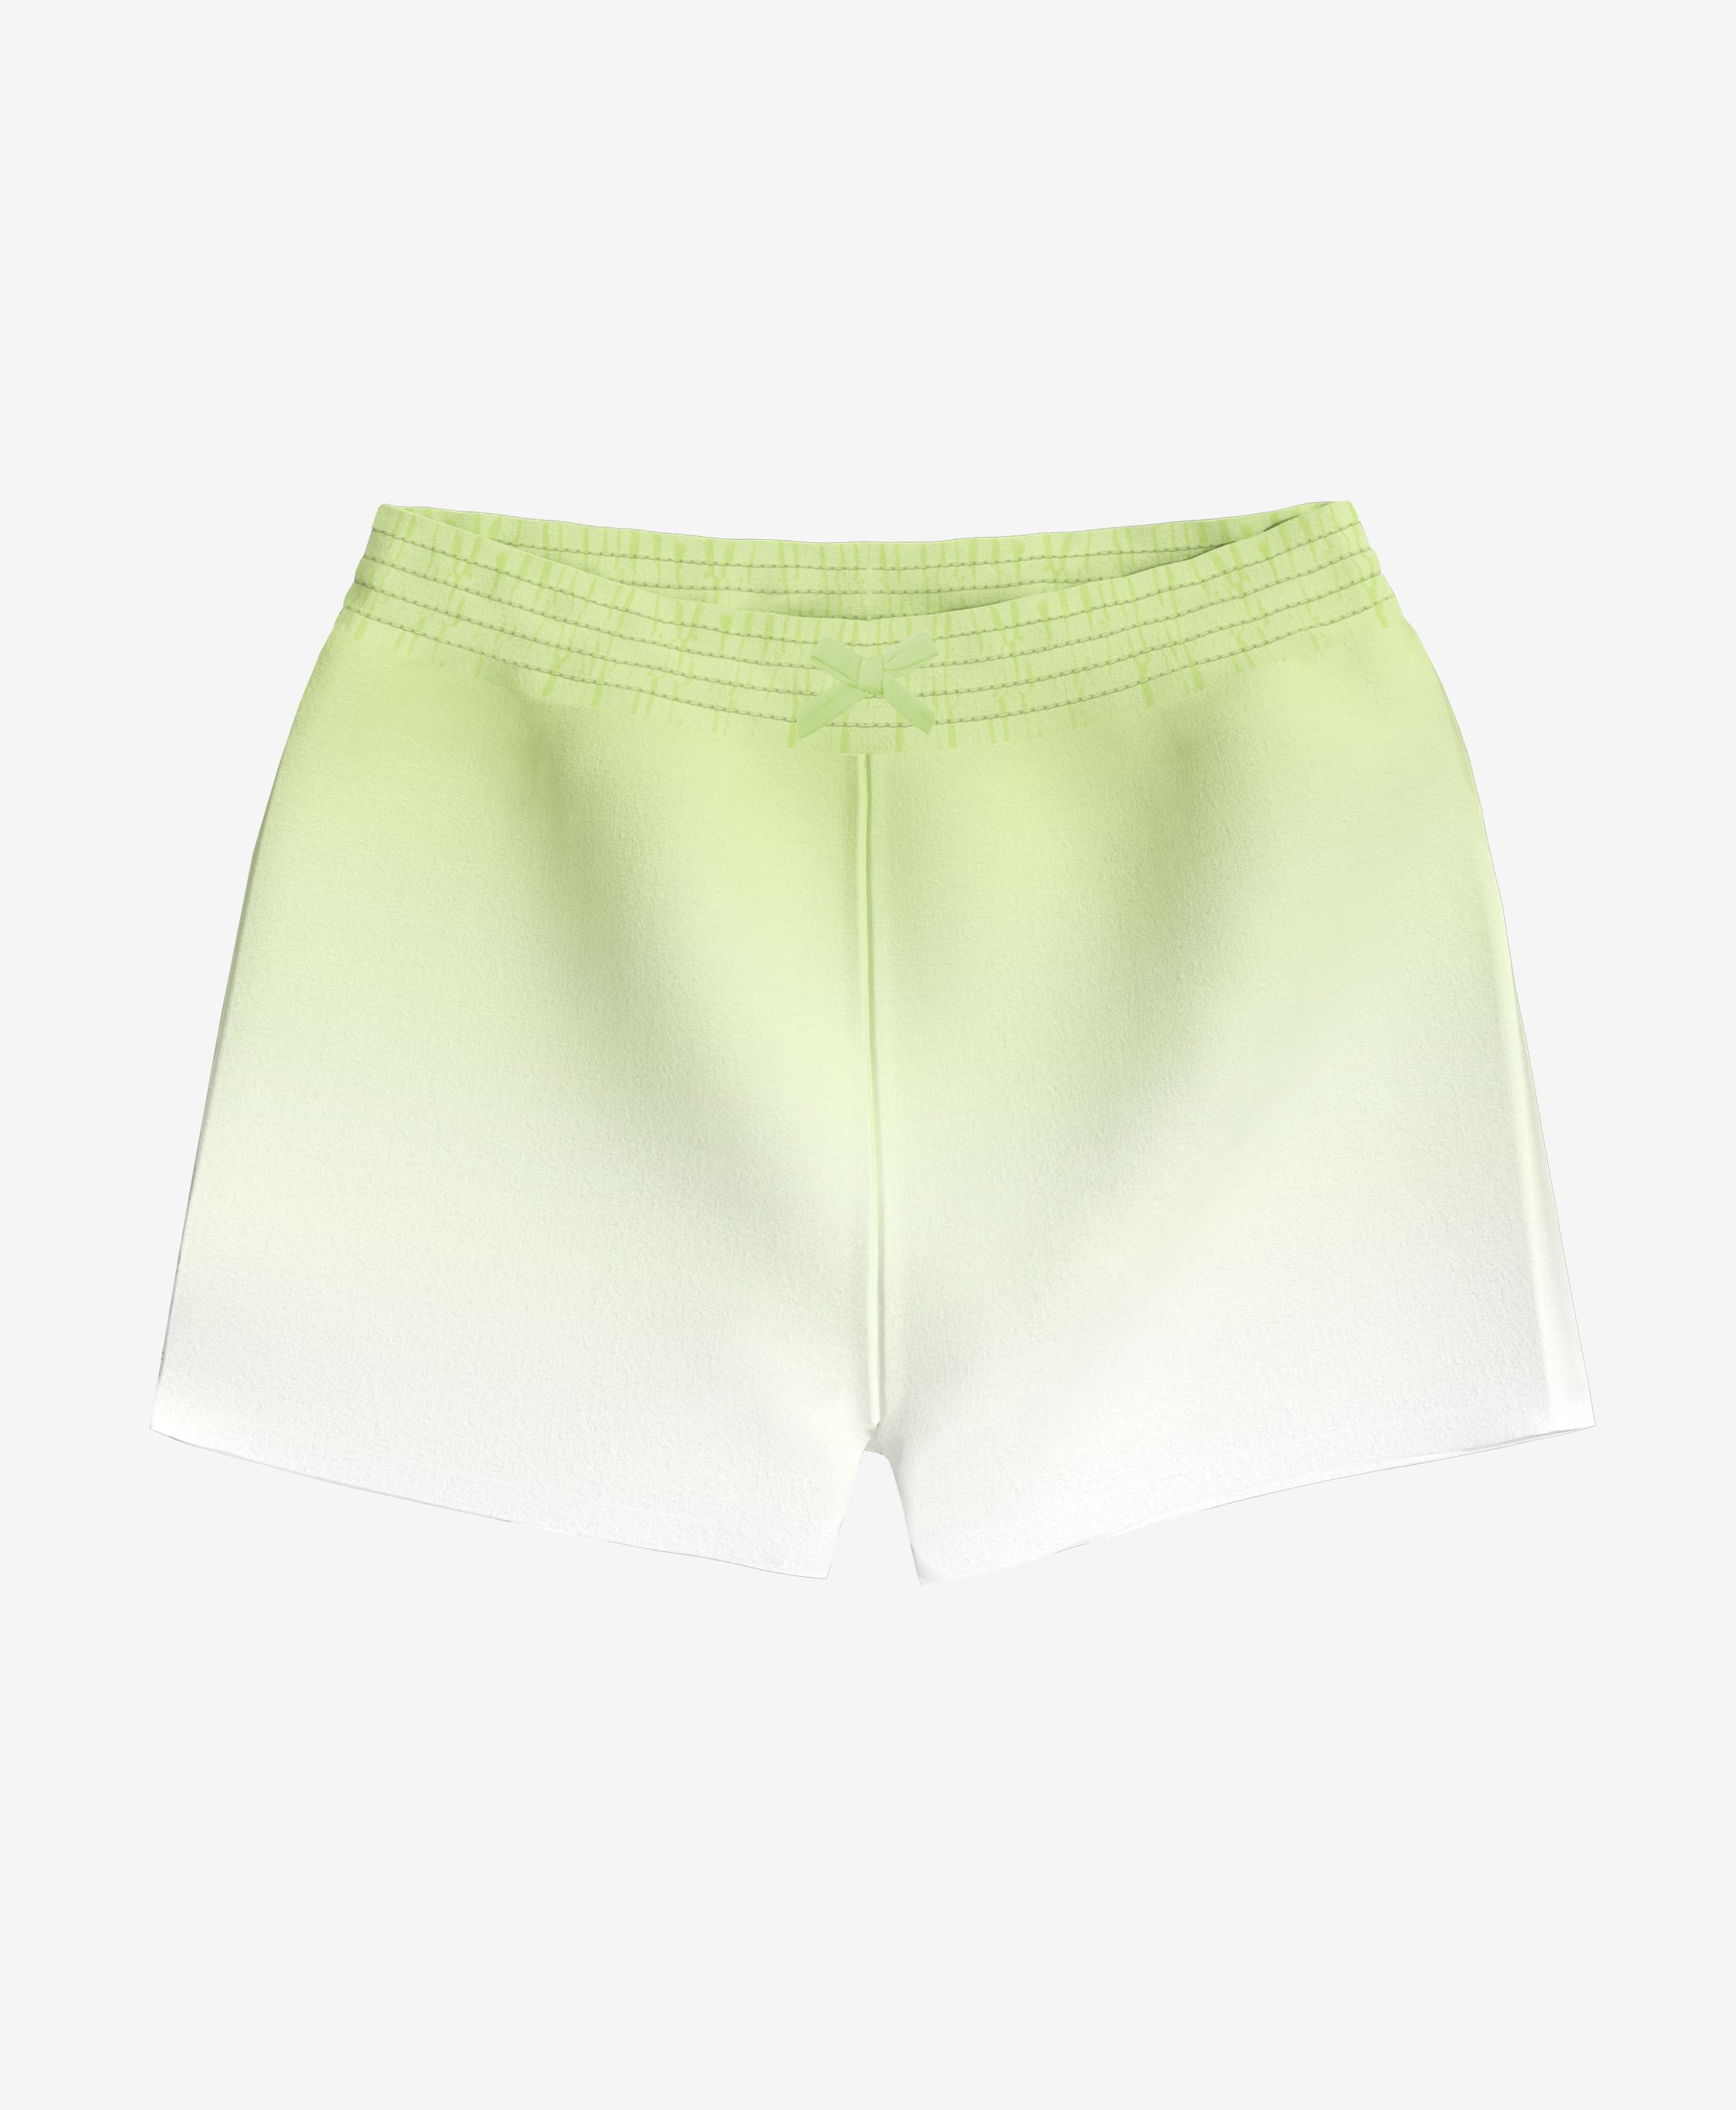 Shorts, 100% Baumwolle, für Mädchen, grün, weiß, 74-98 cm